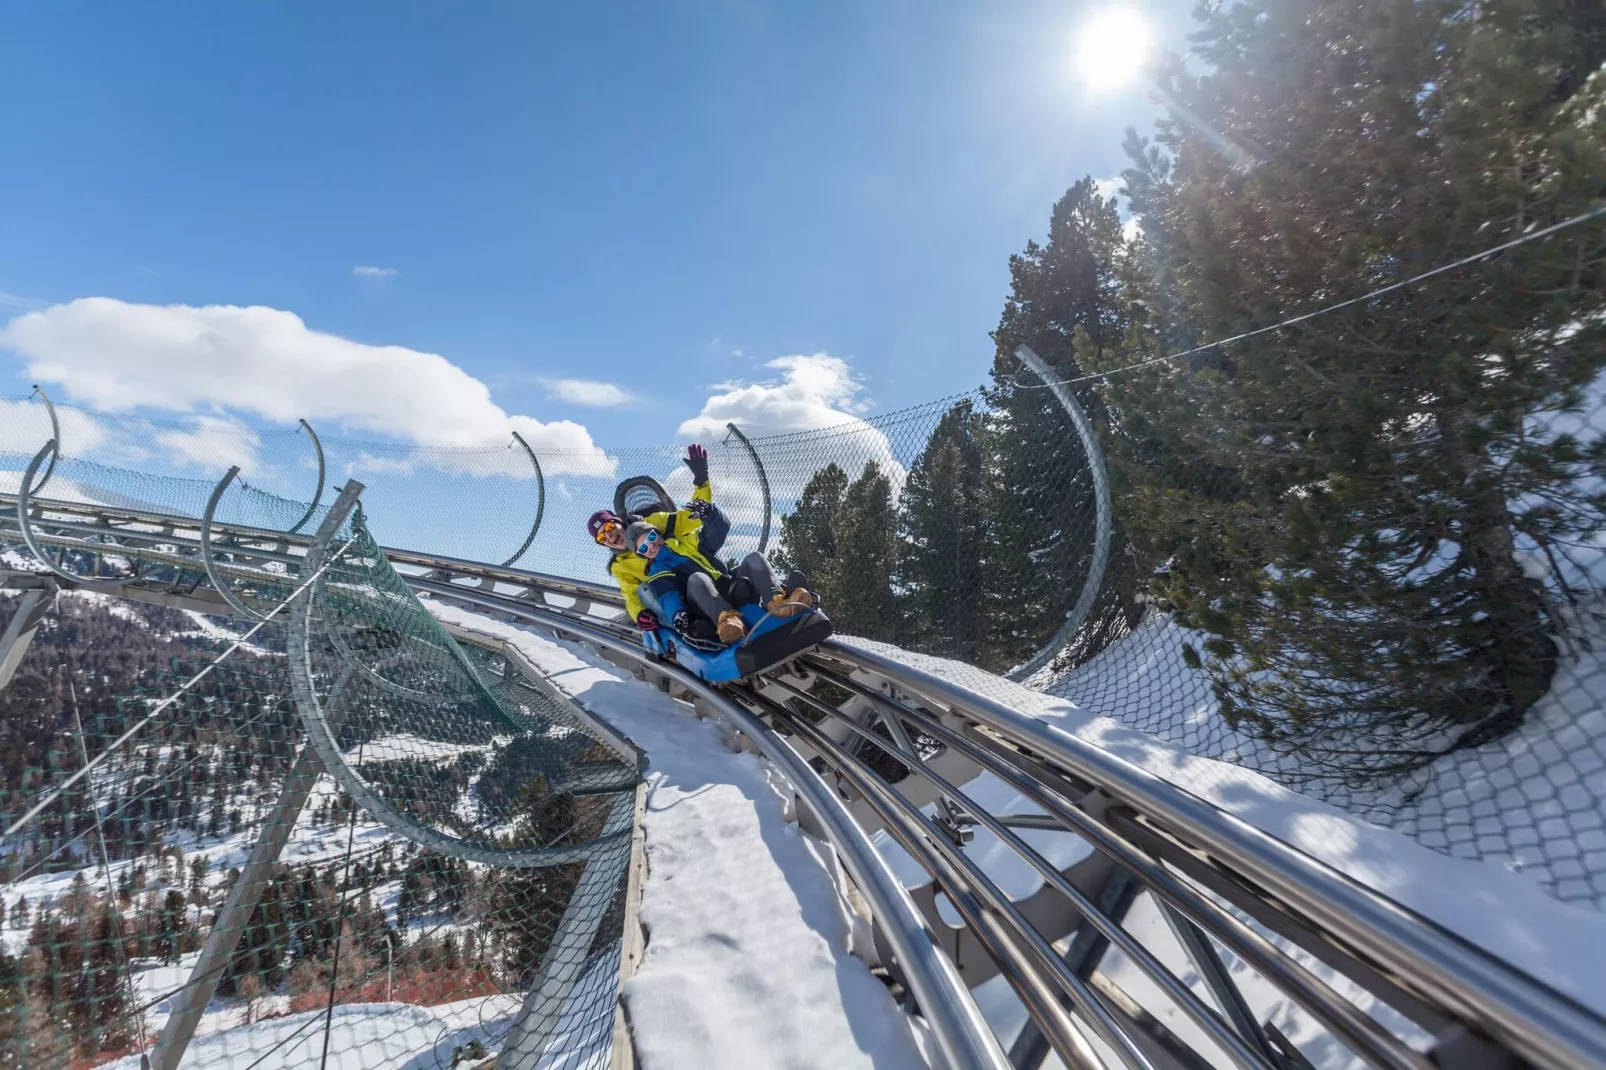 Alpenpark Turrach Chalets 3-Gebied winter 5km